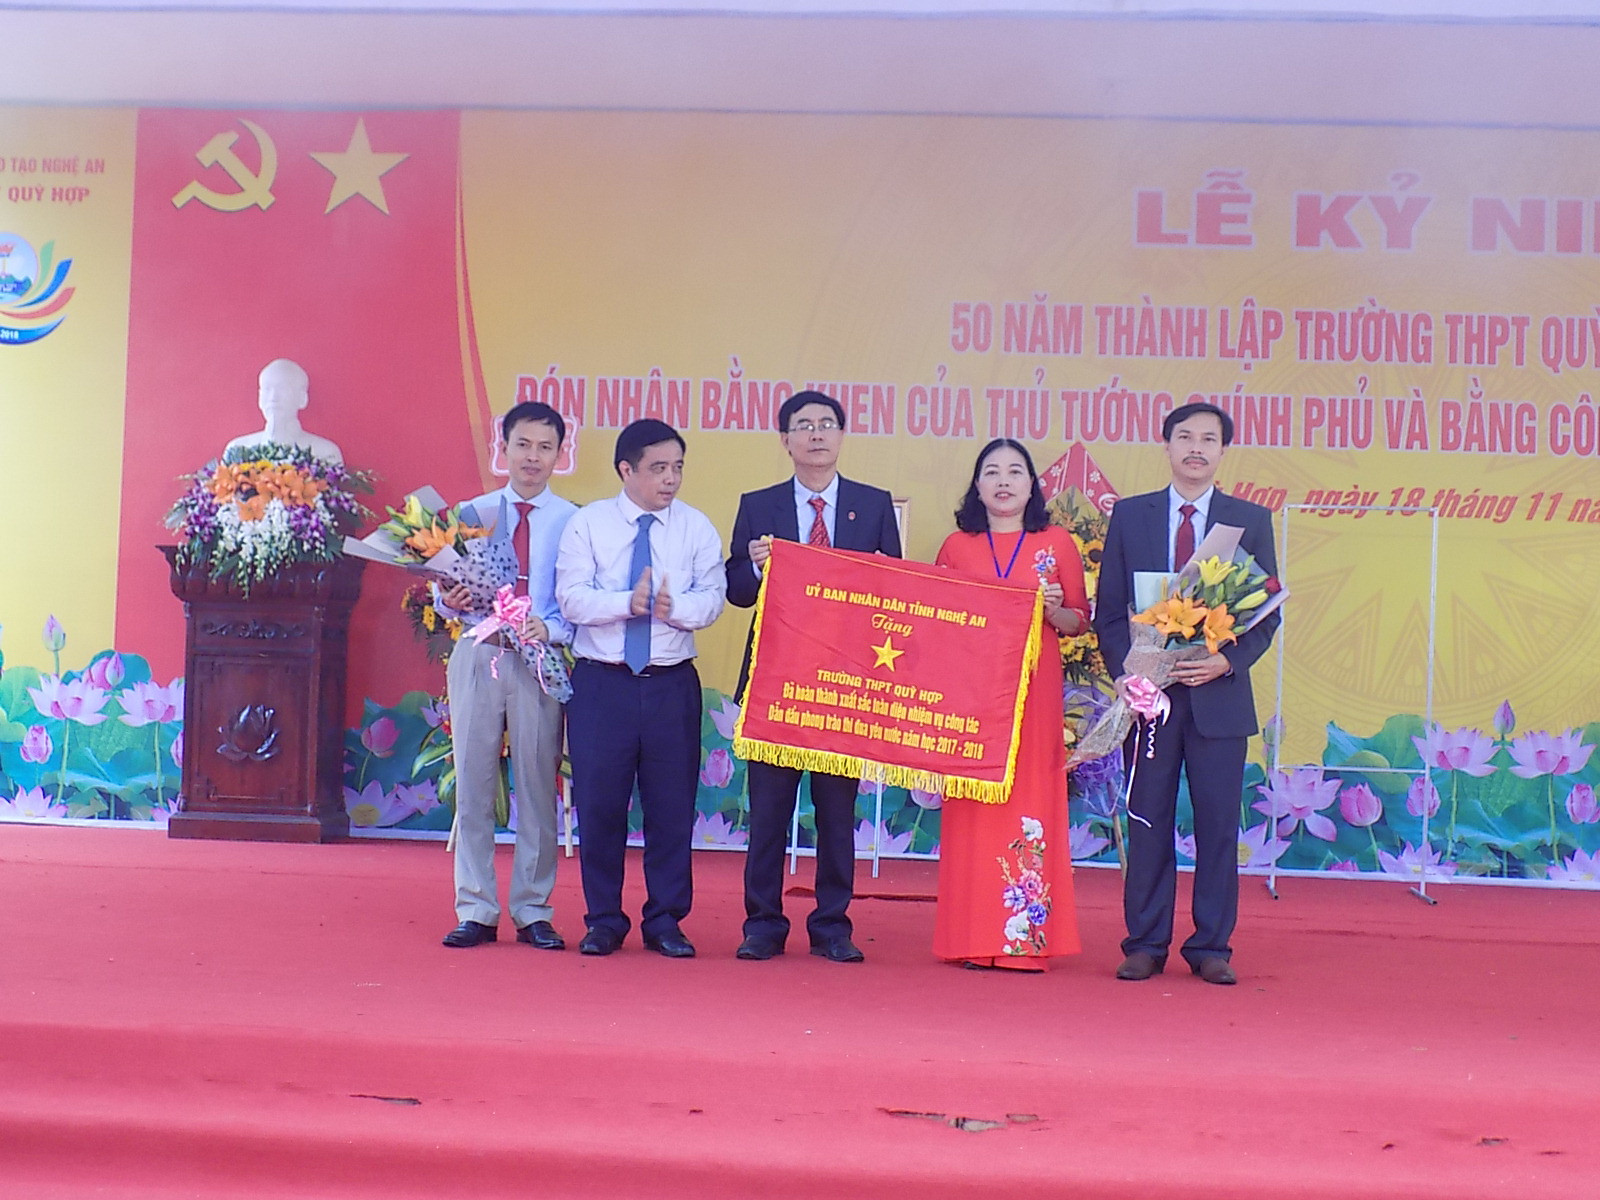 Đồng chí Huỳnh Thanh Điền Trao bằng khen của TTCP và cờ thi đua của UBND tỉnh cho lãnh đạo Trường THPT Quỳ Hợp.